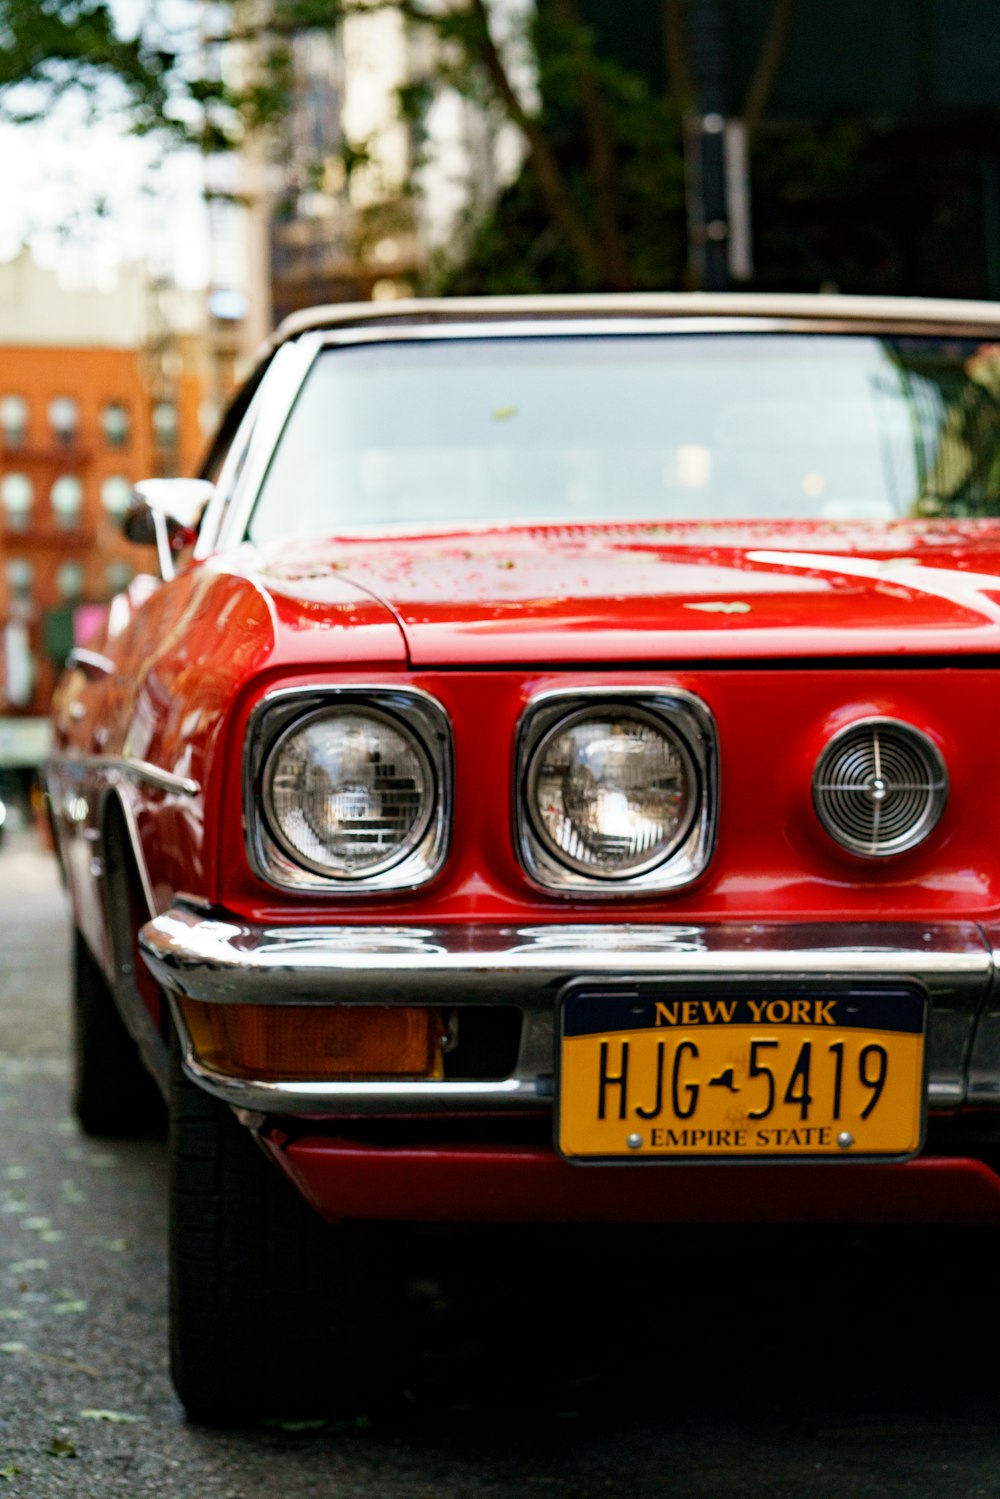 뉴욕 HJG 5419 번호판이 달린 빨간 차의 사진을 닫습니다.